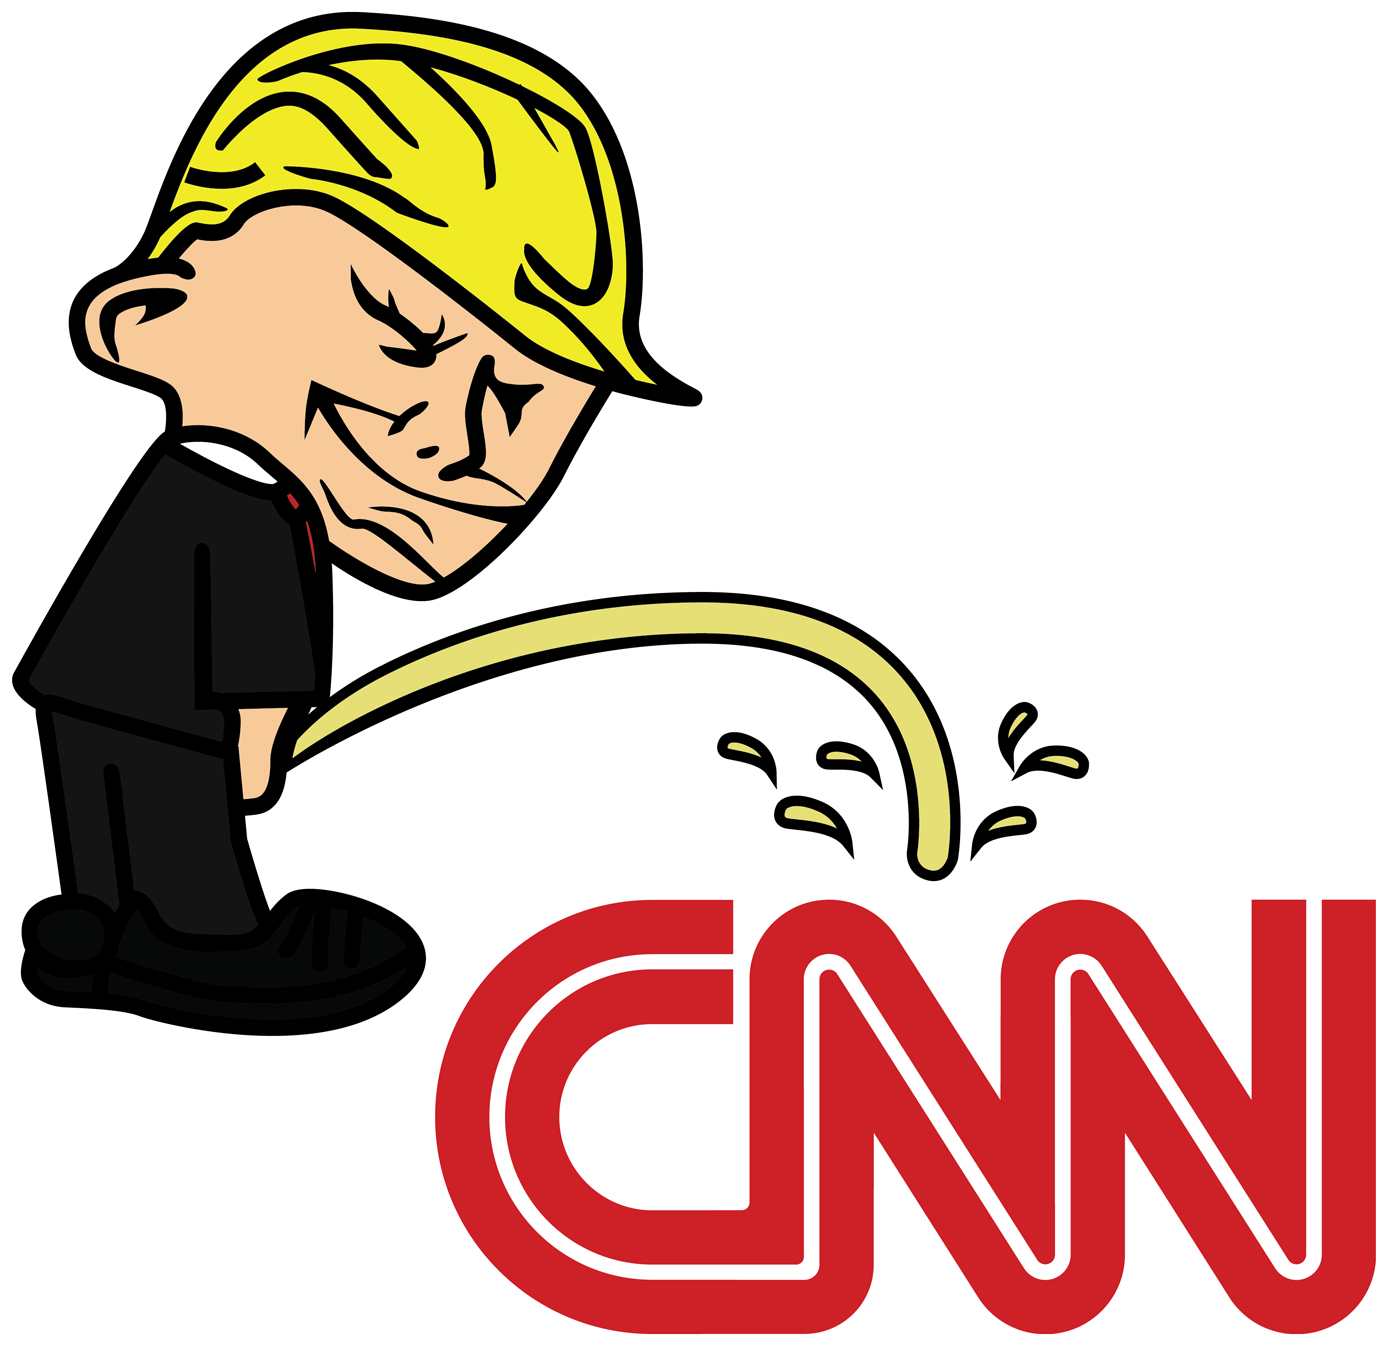 Pi$$ing Trump Badboy Cnn Clear Sticker - Trump Bad Boy Stickers (1500x1500)